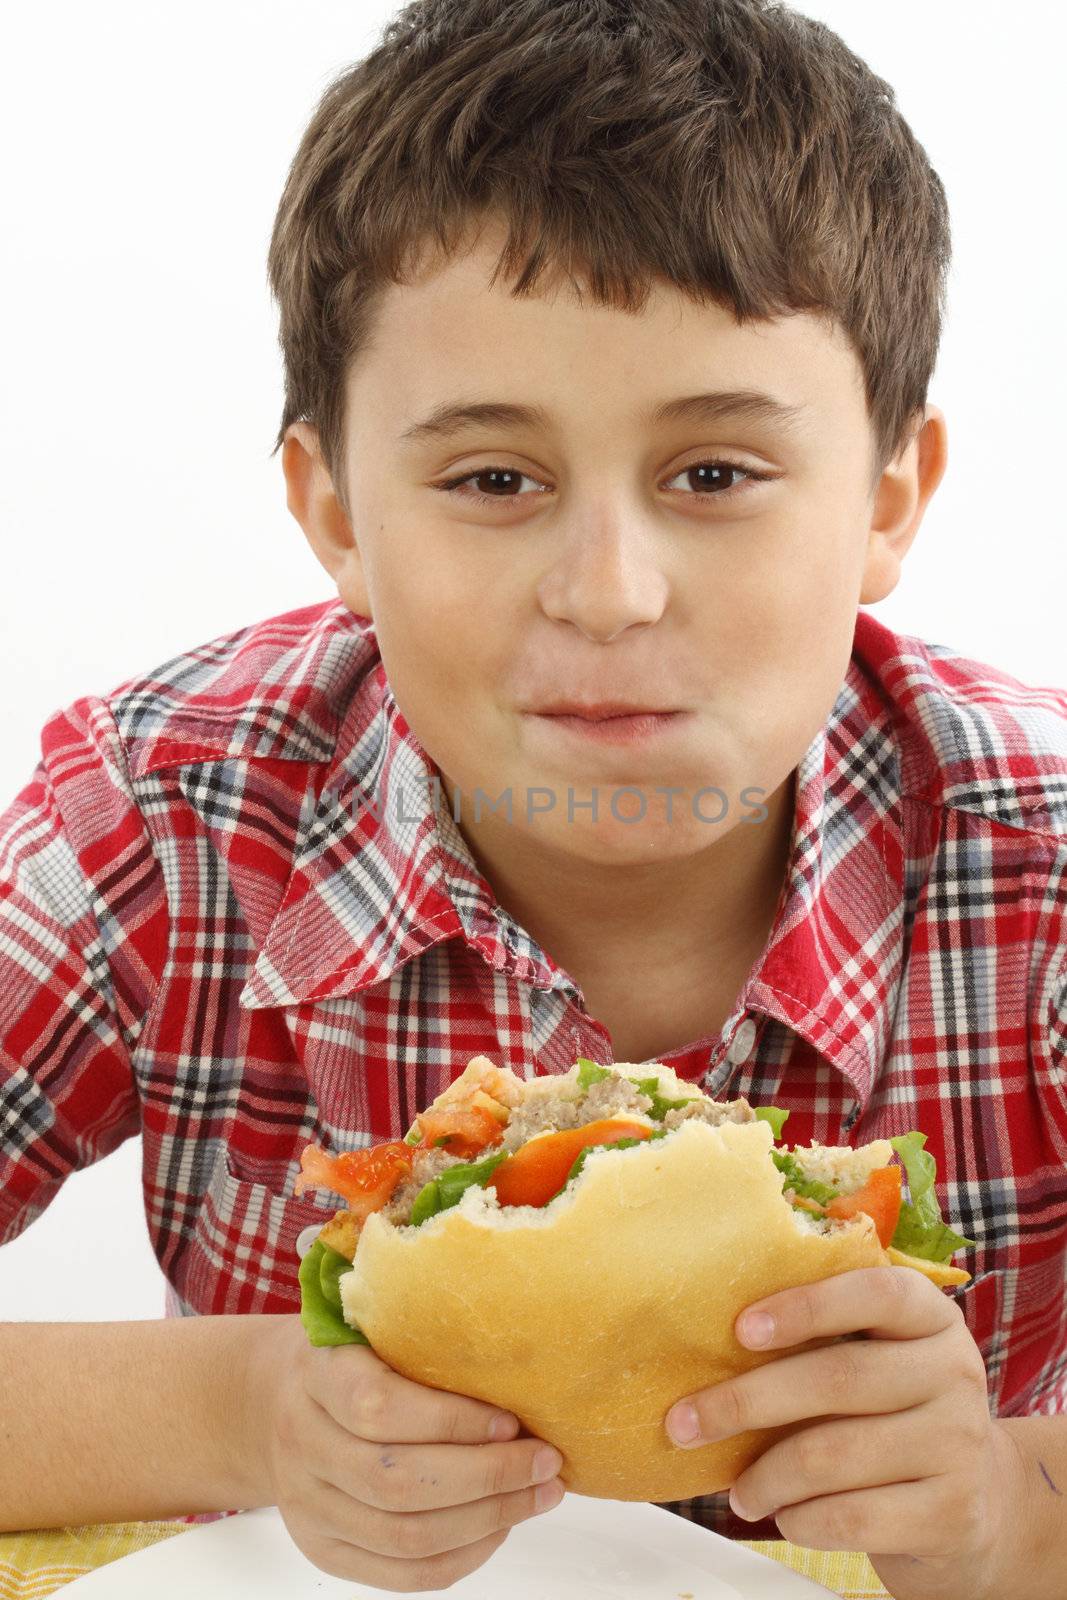 boy eating a big hamburger close up